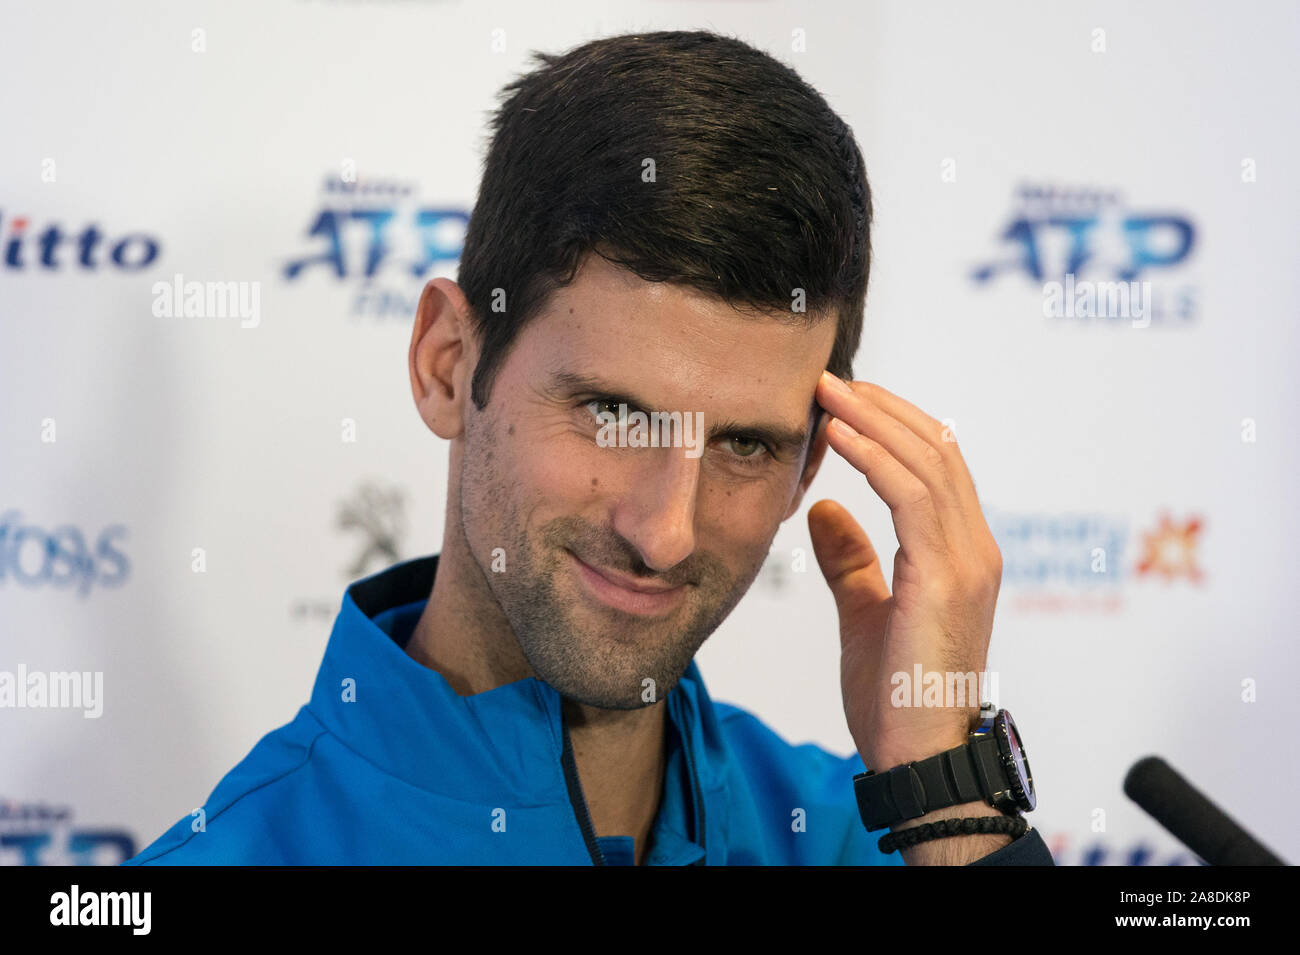 Londra, Regno Unito. 08 Nov, 2019. Novak Djokovic di Serbia durante il Nitto ATP Finals Tennis Londra media day all'O2, Londra, Inghilterra il 8 novembre 2019. Foto di Andy Rowland. Credito: prime immagini multimediali/Alamy Live News Foto Stock